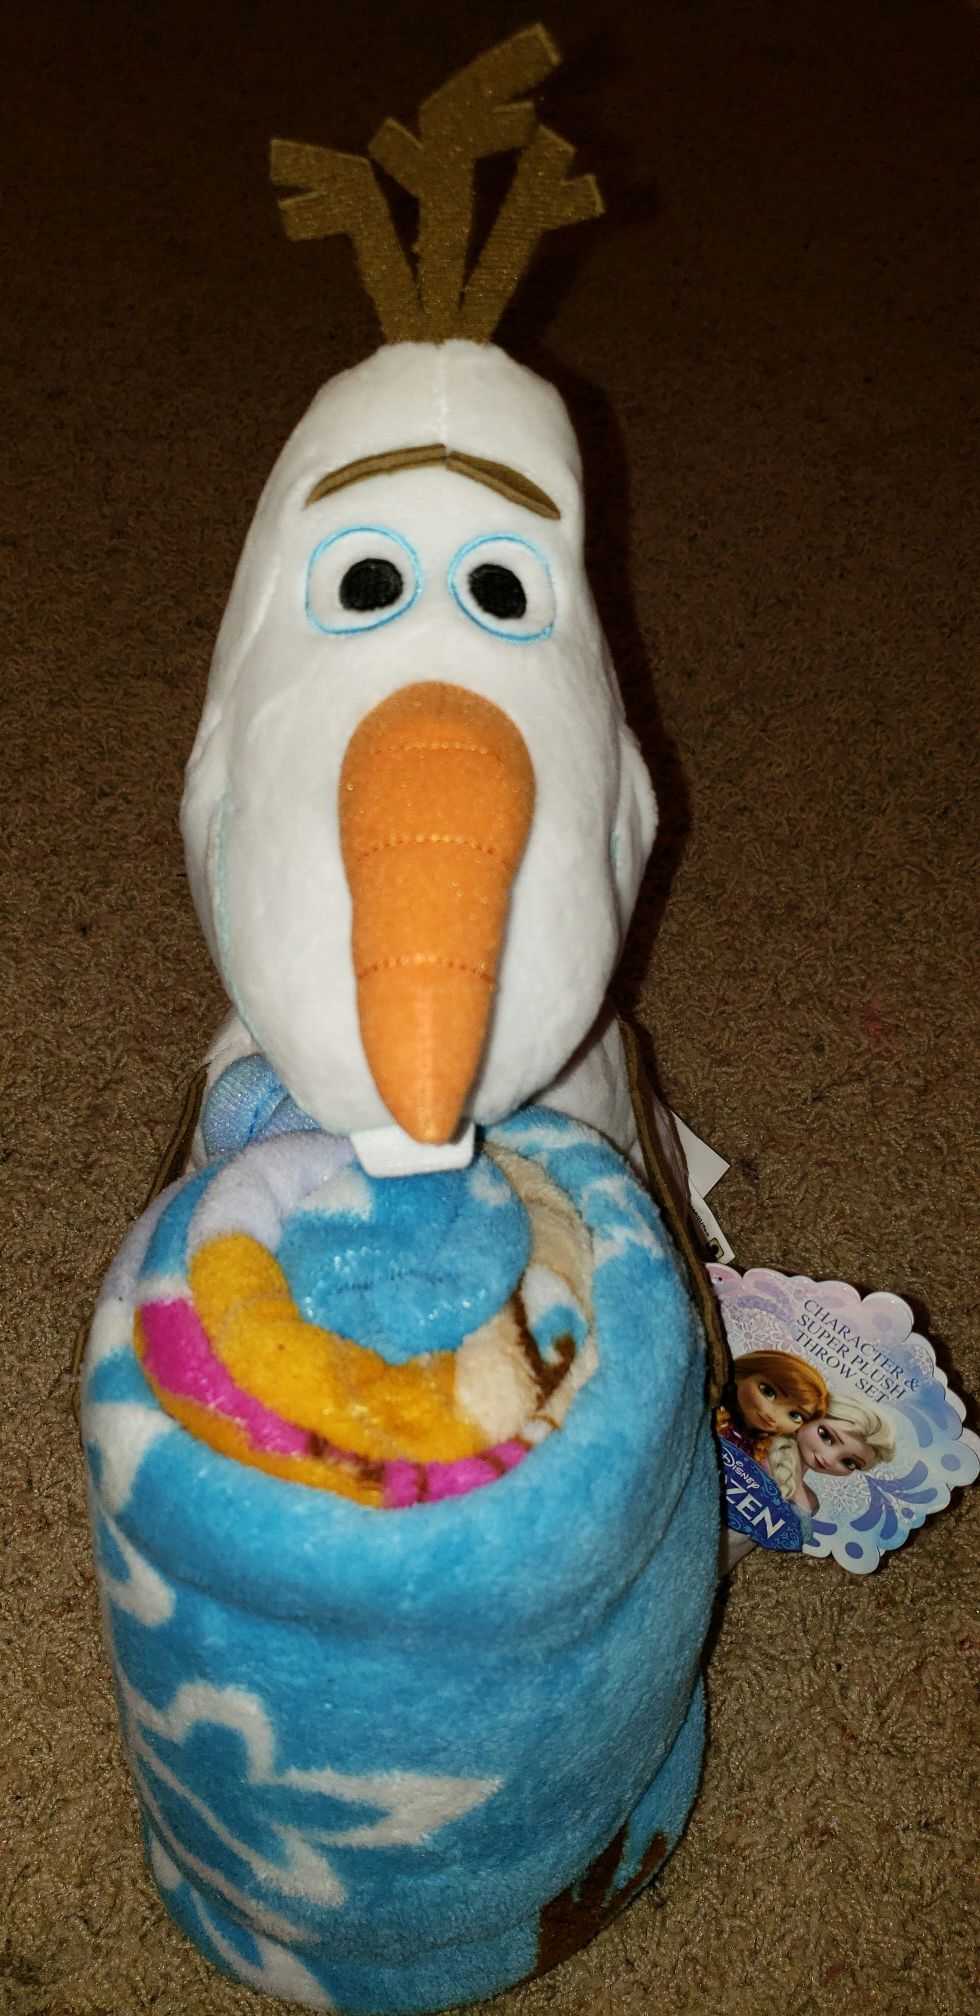 Disney's Frozen character pillow and fleece throw blanket set